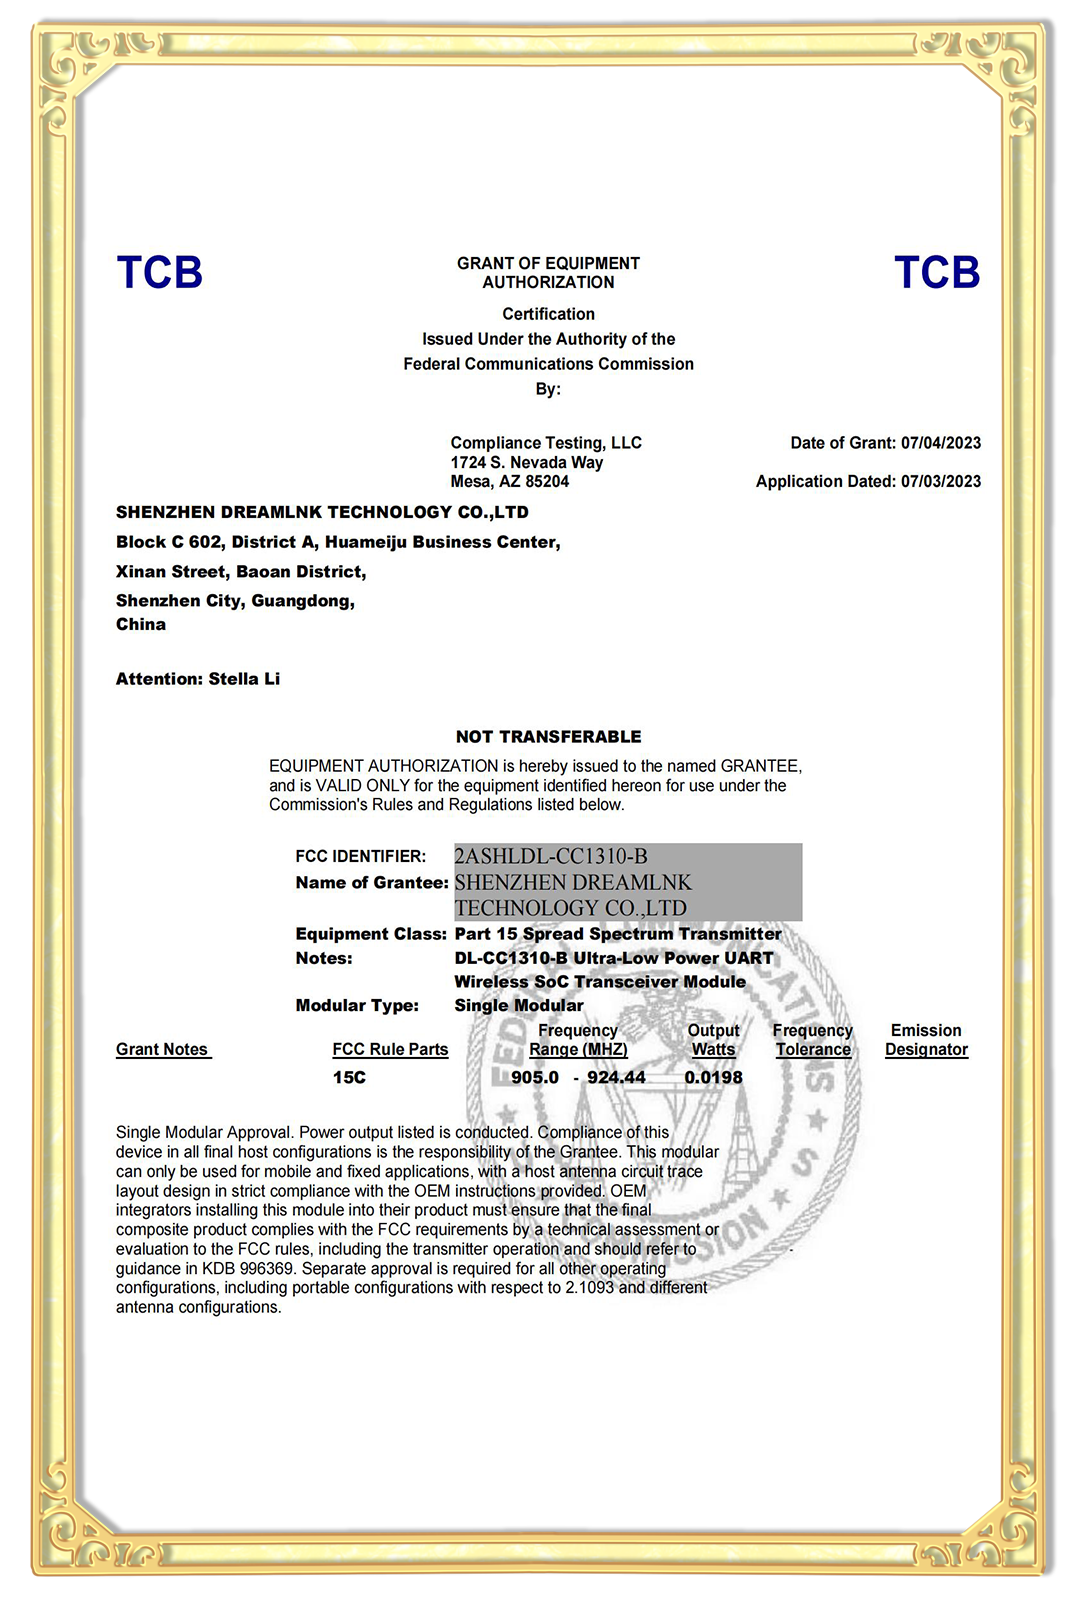 FCC Certificate of DL-CC1310-B RF module